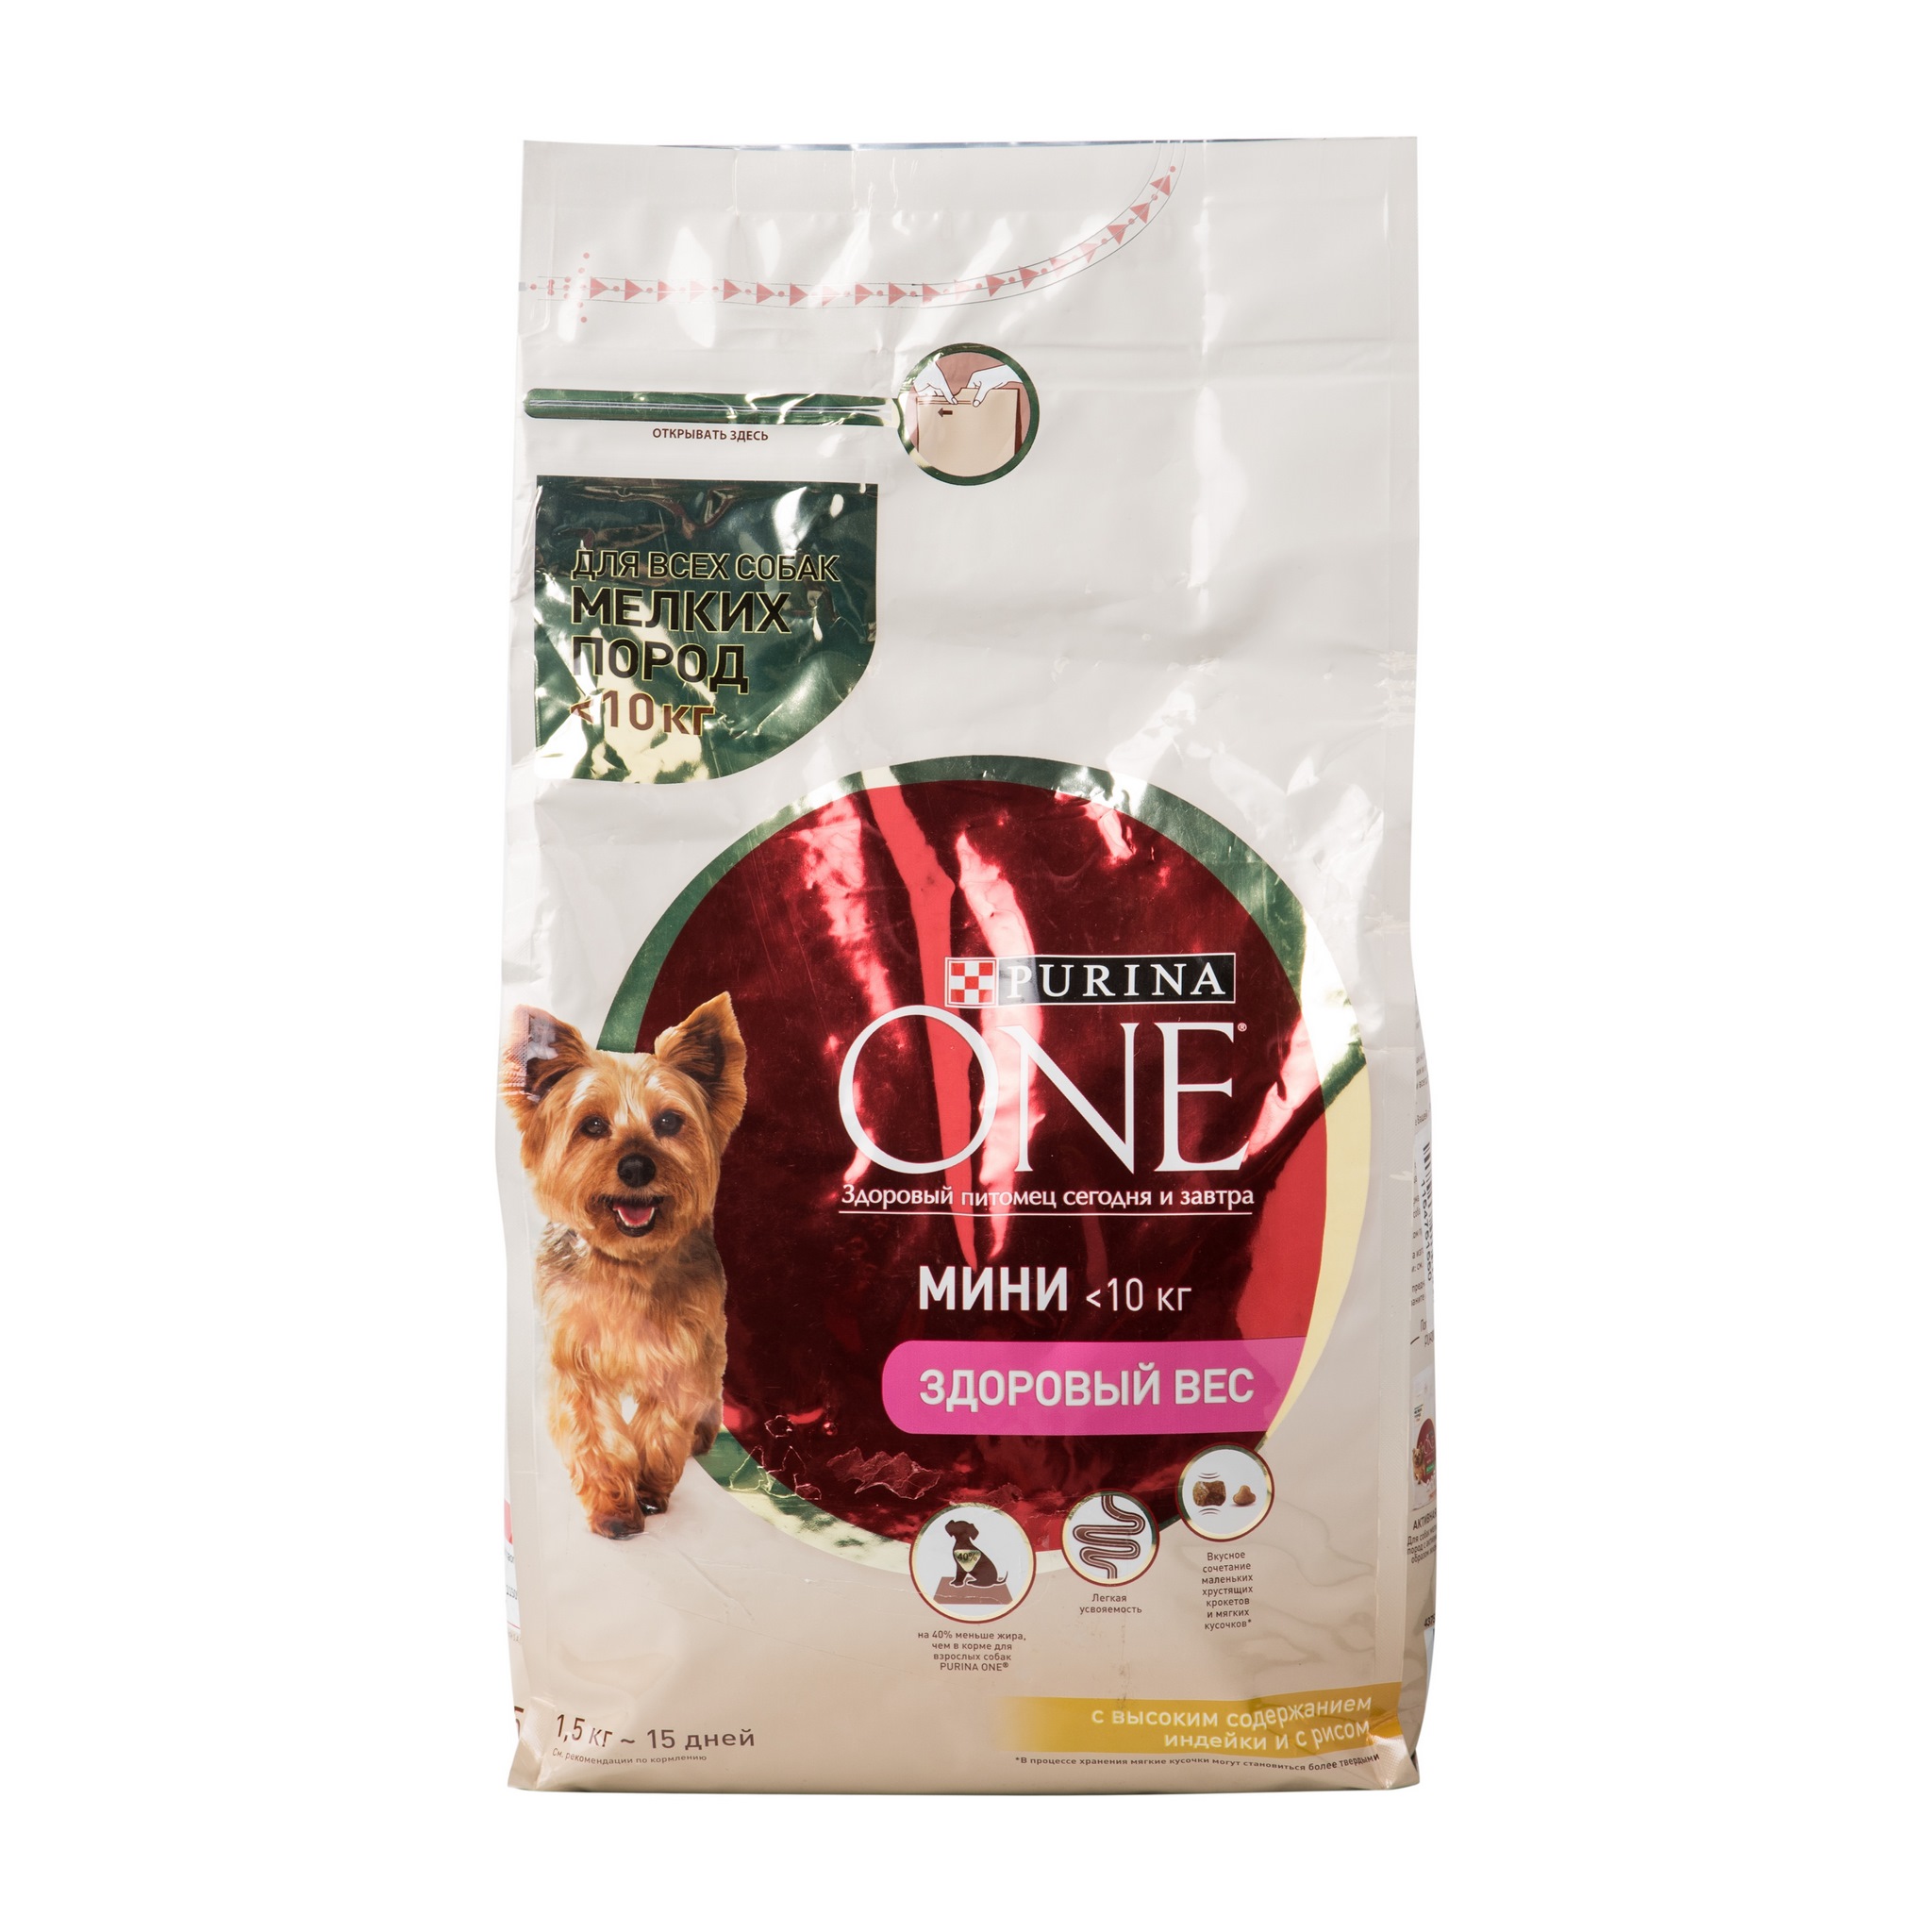 Сухой корм для собак Purina one мини - рейтинг 4,73 по отзывам экспертов ☑  Экспертиза состава и производителя | Роскачество